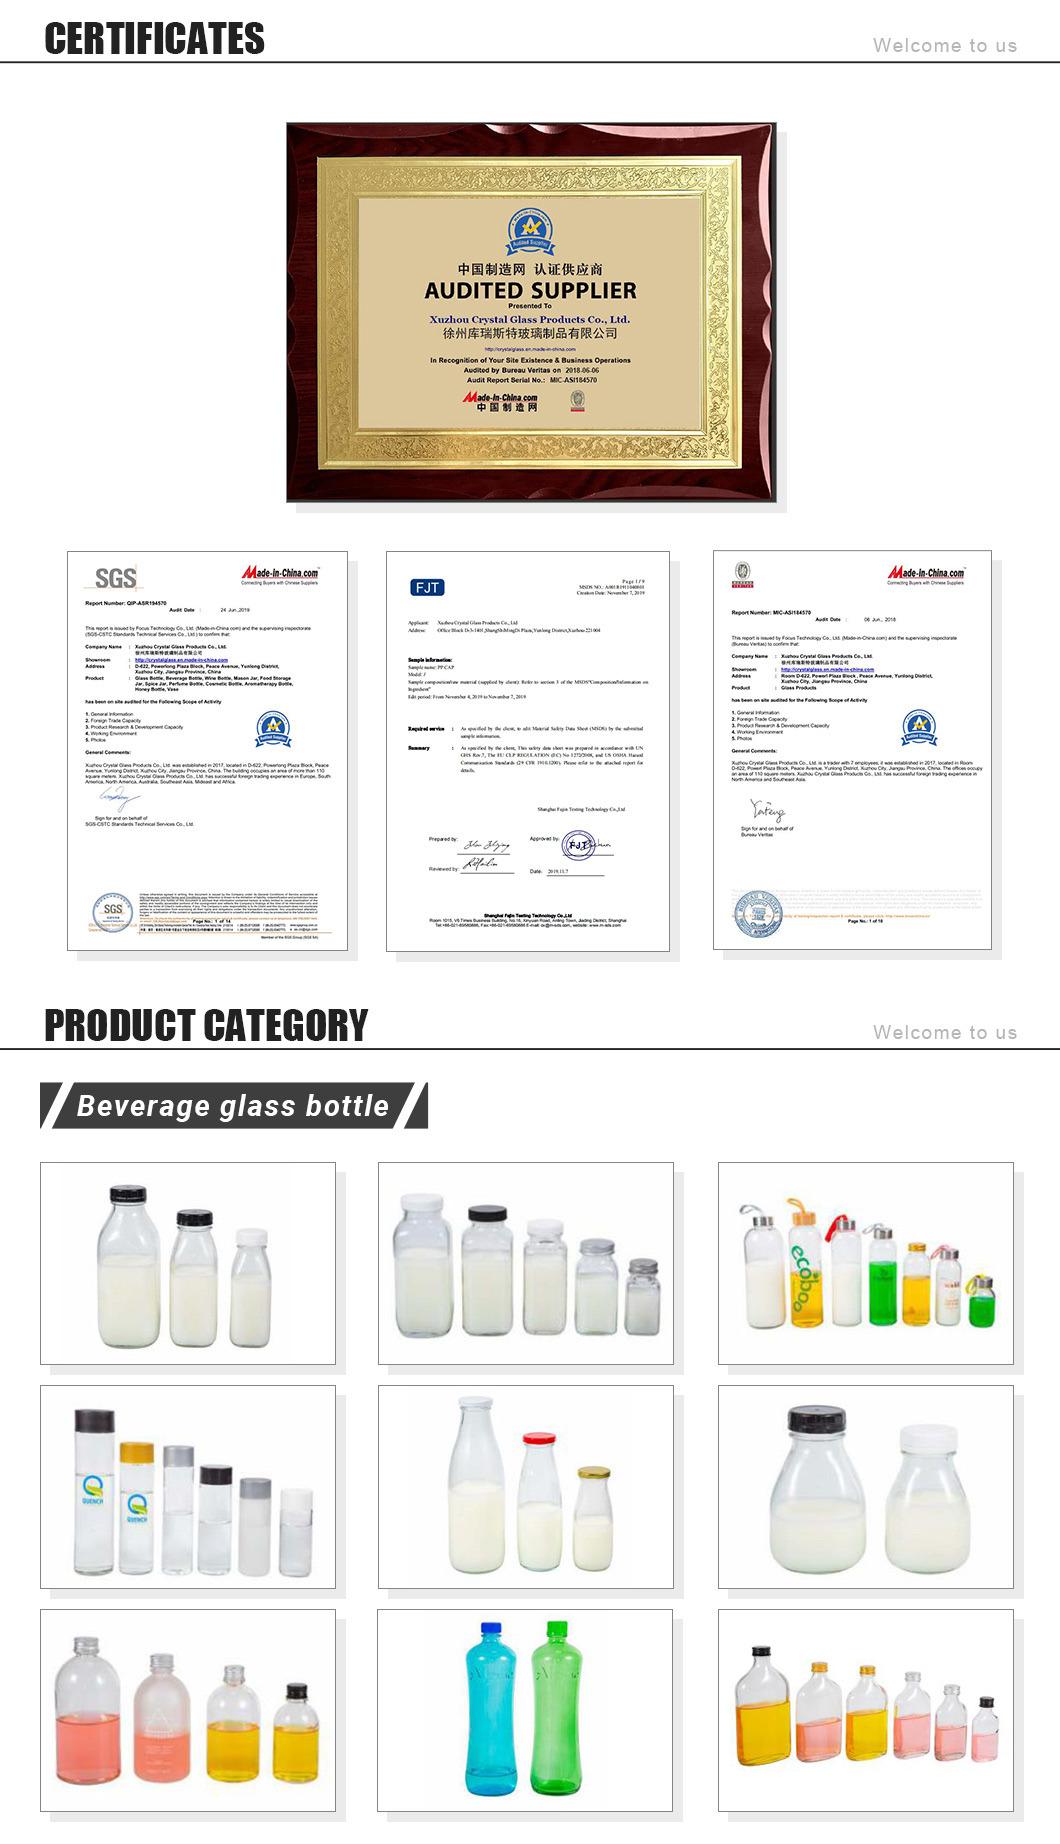 Custom Logo Essential Oil Cylender Serum Black Glass Dropper Bottle 30ml